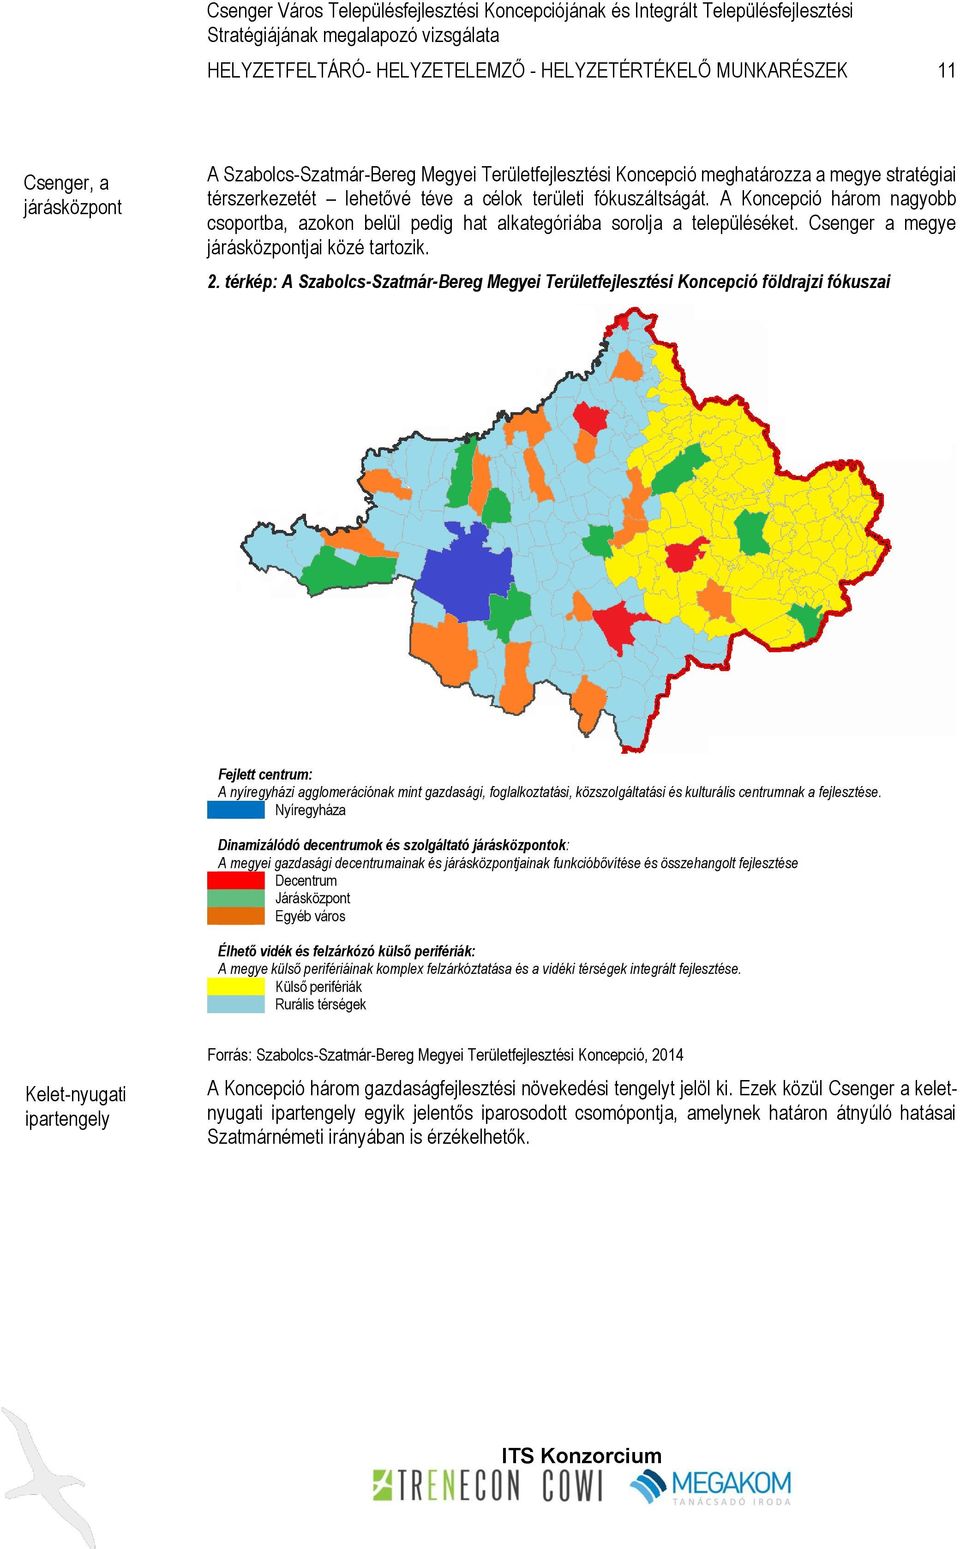 térkép: A Szabolcs-Szatmár-Bereg Megyei Területfejlesztési Koncepció földrajzi fókuszai Fejlett centrum: A nyíregyházi agglomerációnak mint gazdasági, foglalkoztatási, közszolgáltatási és kulturális